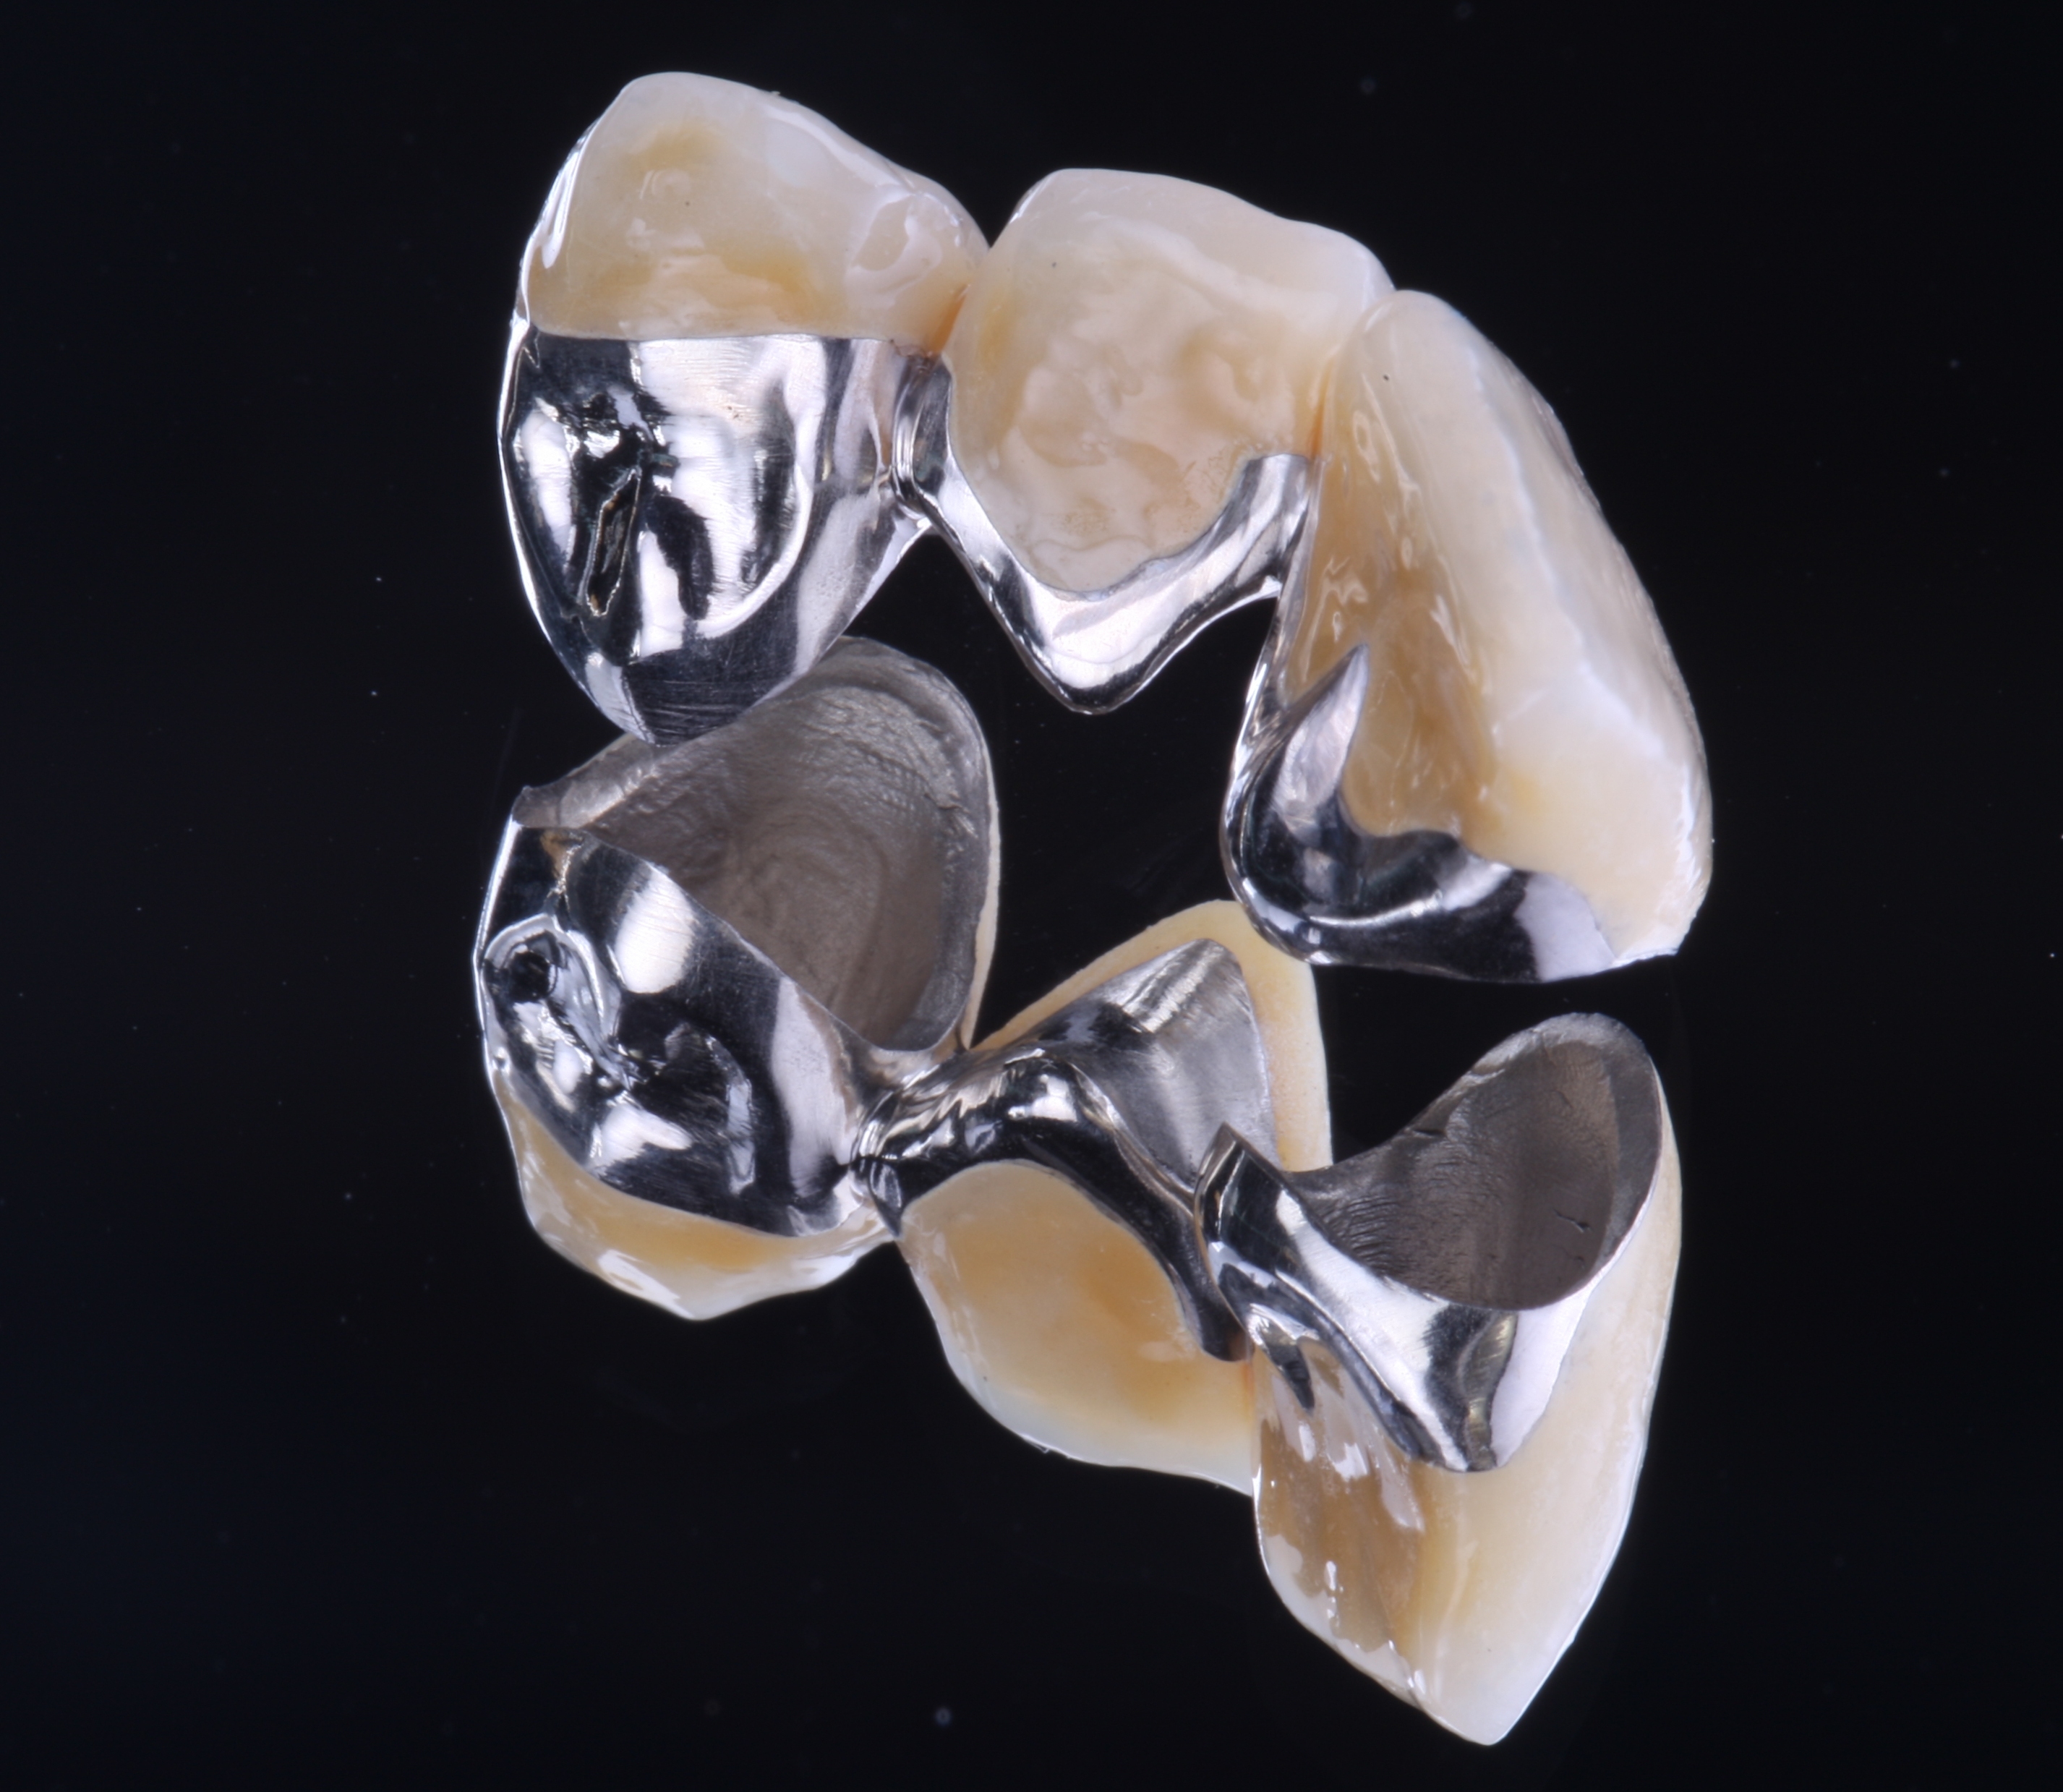 Die Zähne des Zahnersatz bestehen aus Keramik und werden durch Metall zusammen gehalten